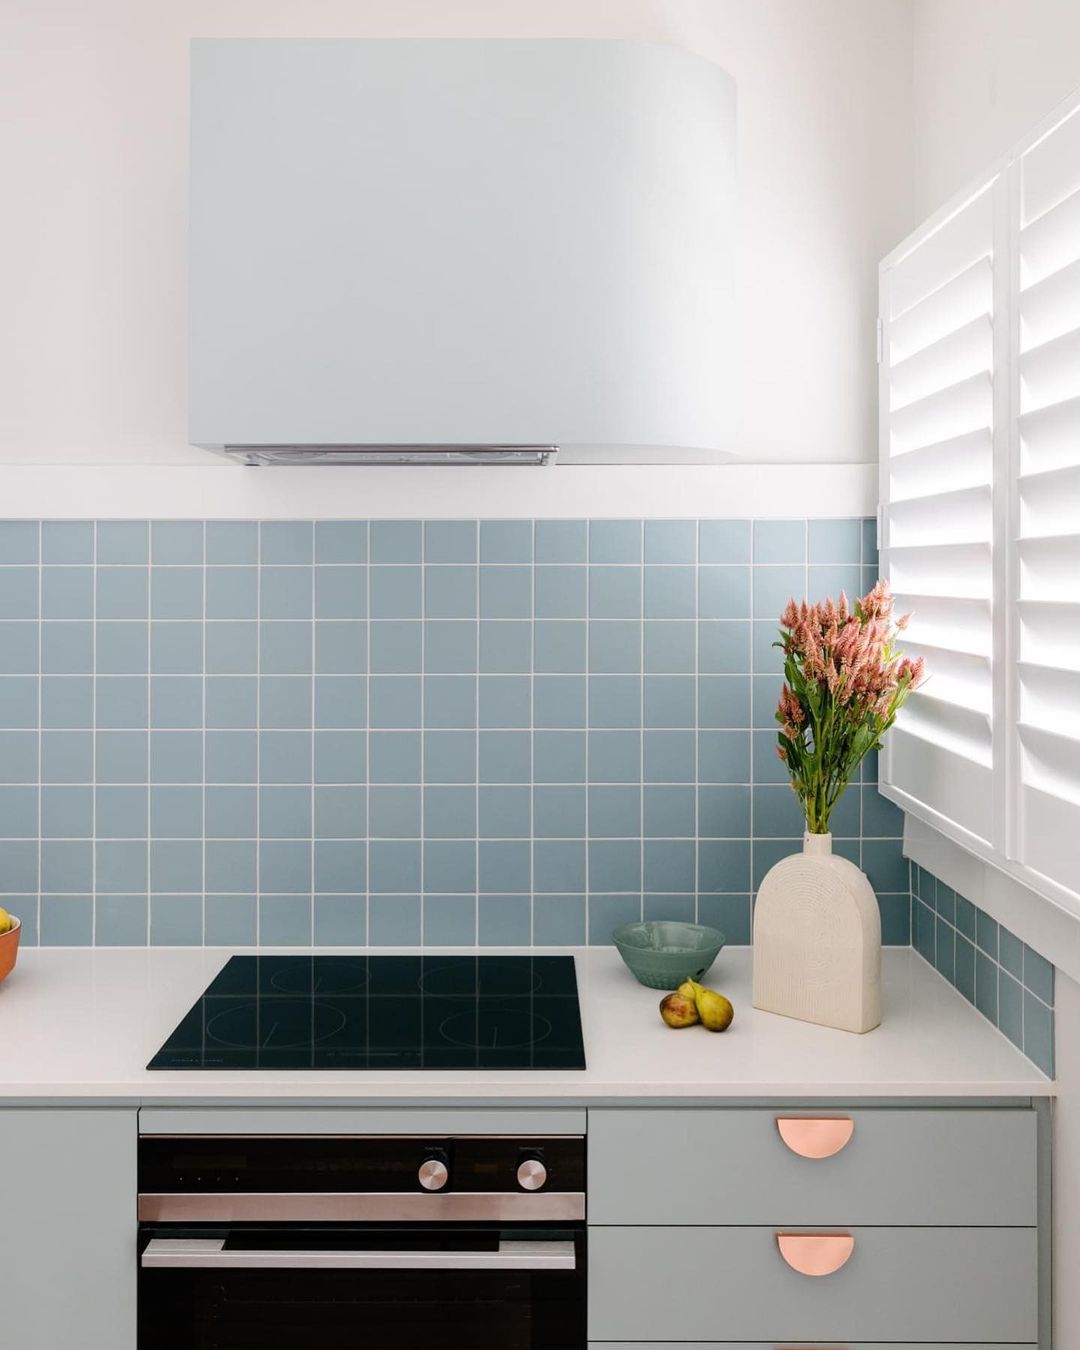 Azulejo de Aqua backsplash en cocina blanca con gabinetes de menta